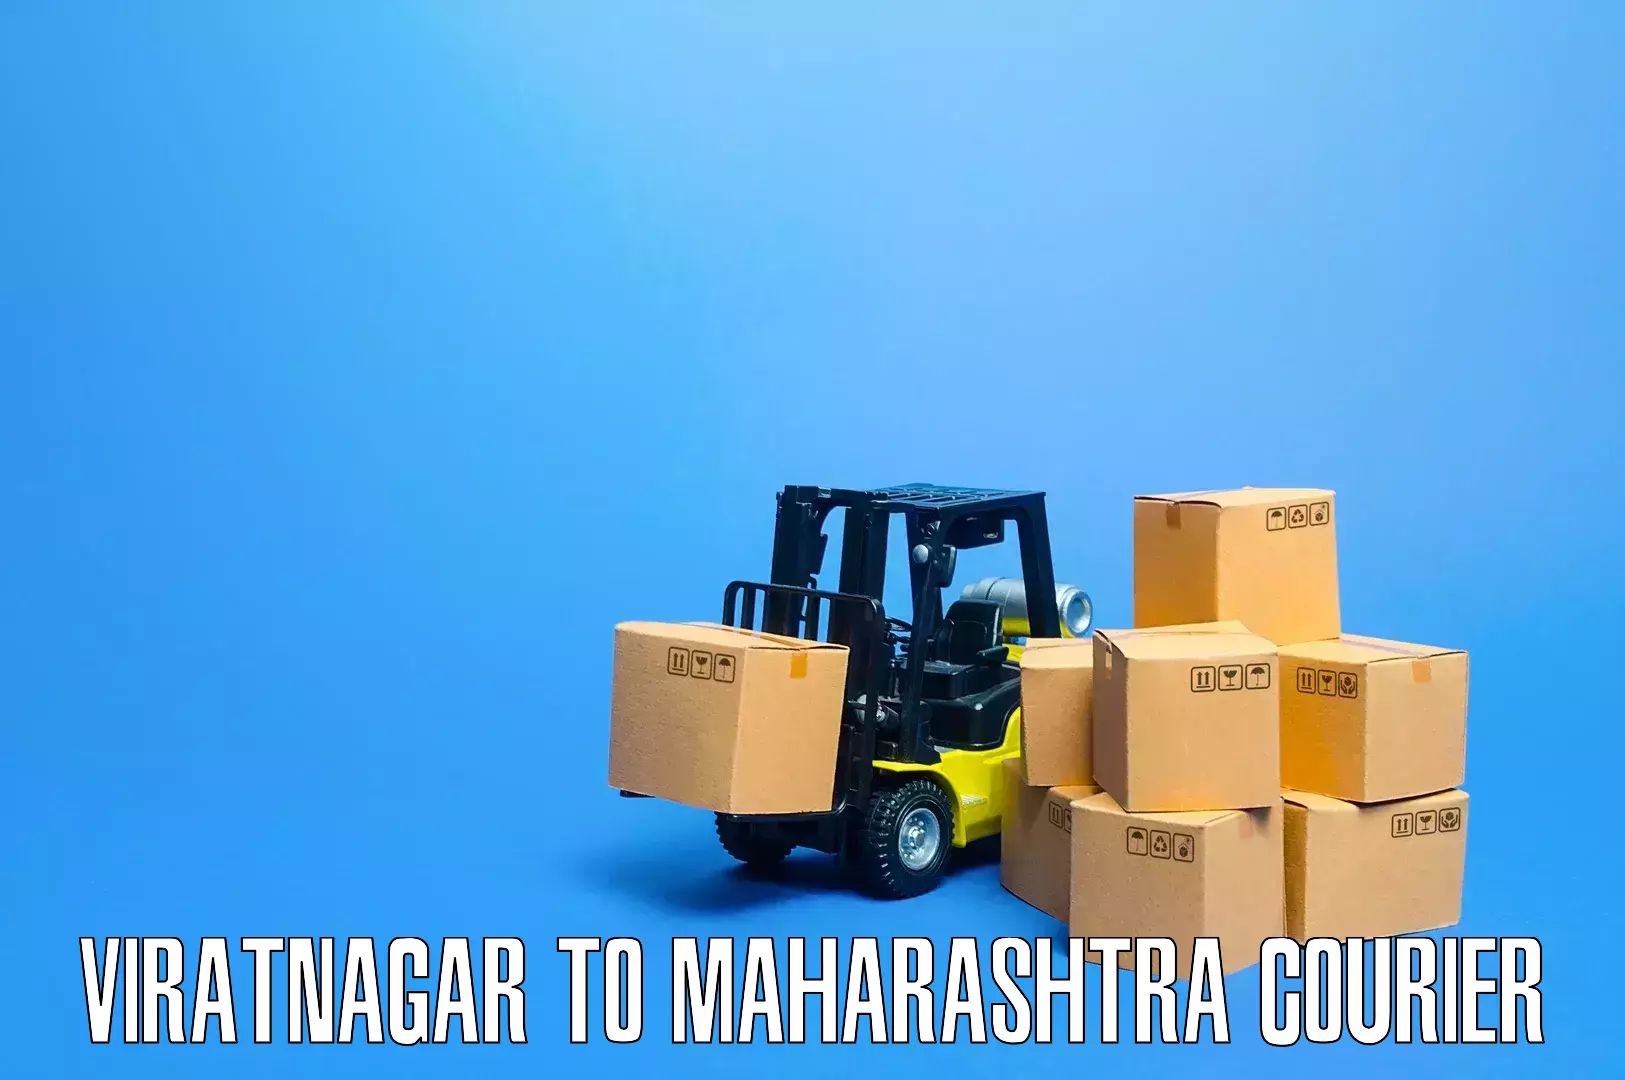 Home furniture moving Viratnagar to Nagpur